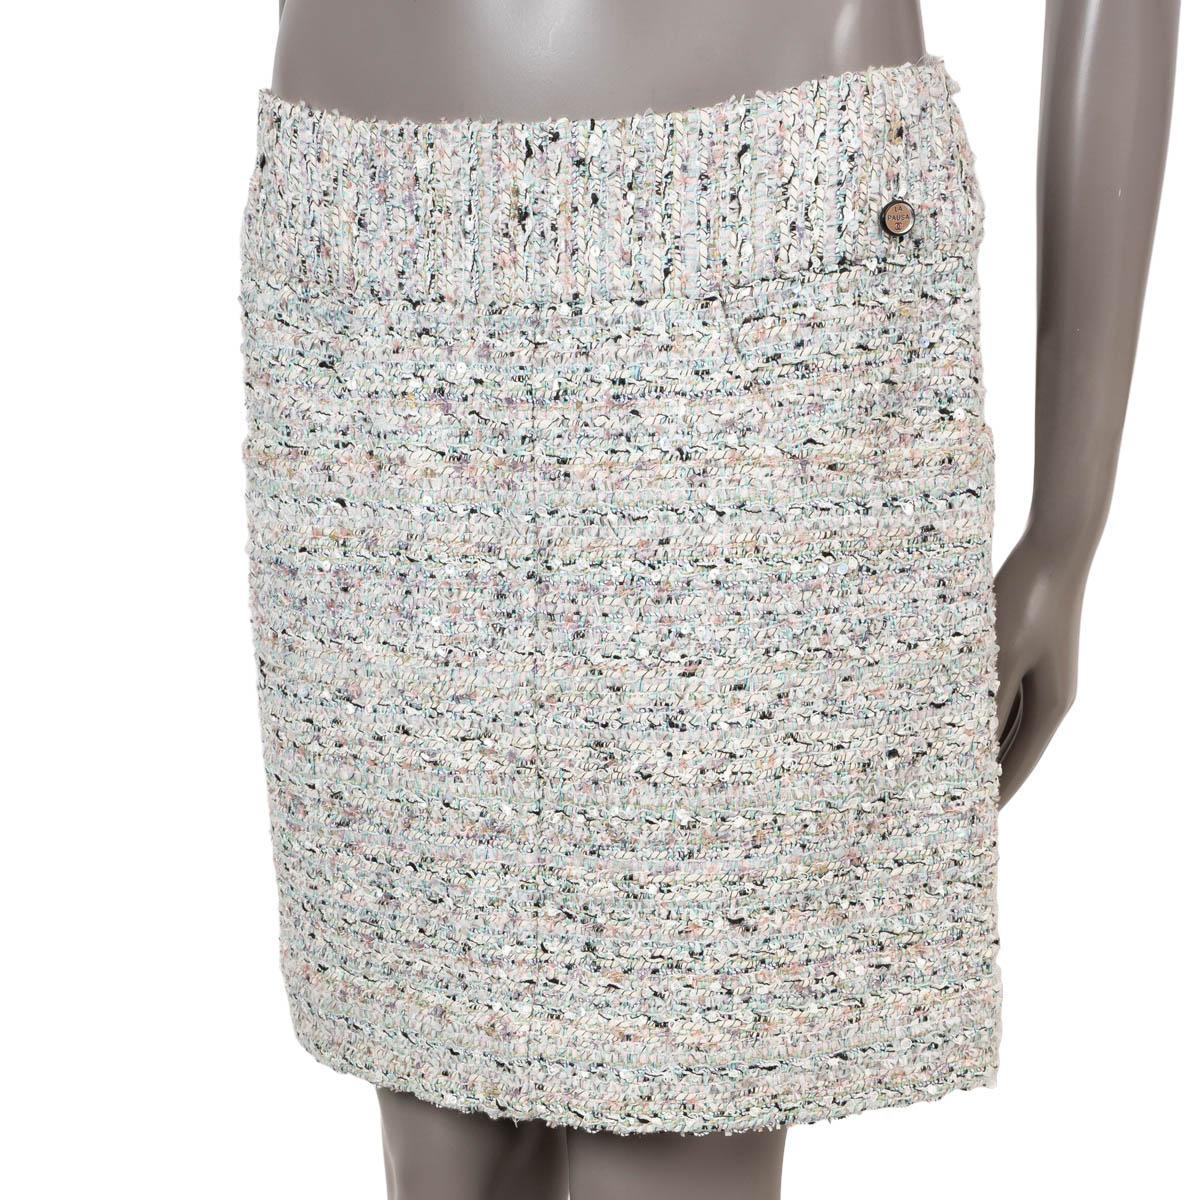 100% authentique Chanel mini jupe en tweed à paillettes blanc, turquoise et rose pâle coton (49%), polyamide (20%), polyester (18%), acétate (6%), acrylique (6%) et viscose (1%). Il comporte deux poches fendues sur le devant et un petit bouton La